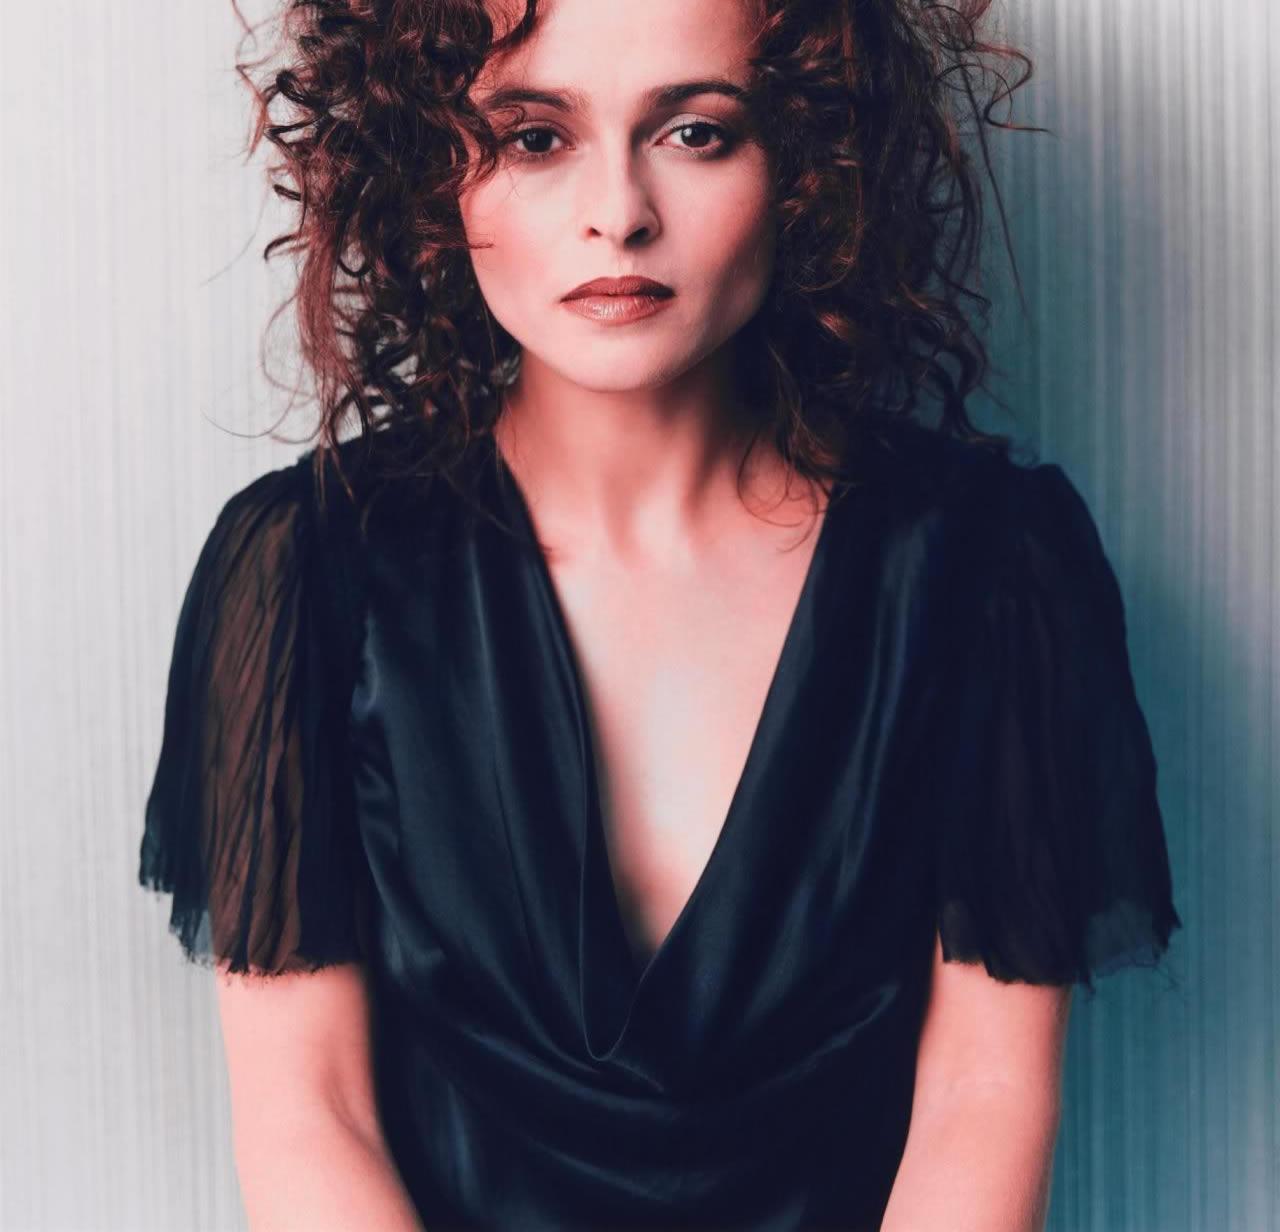 Helena Bonham Carter ? wariatka od Burtona 